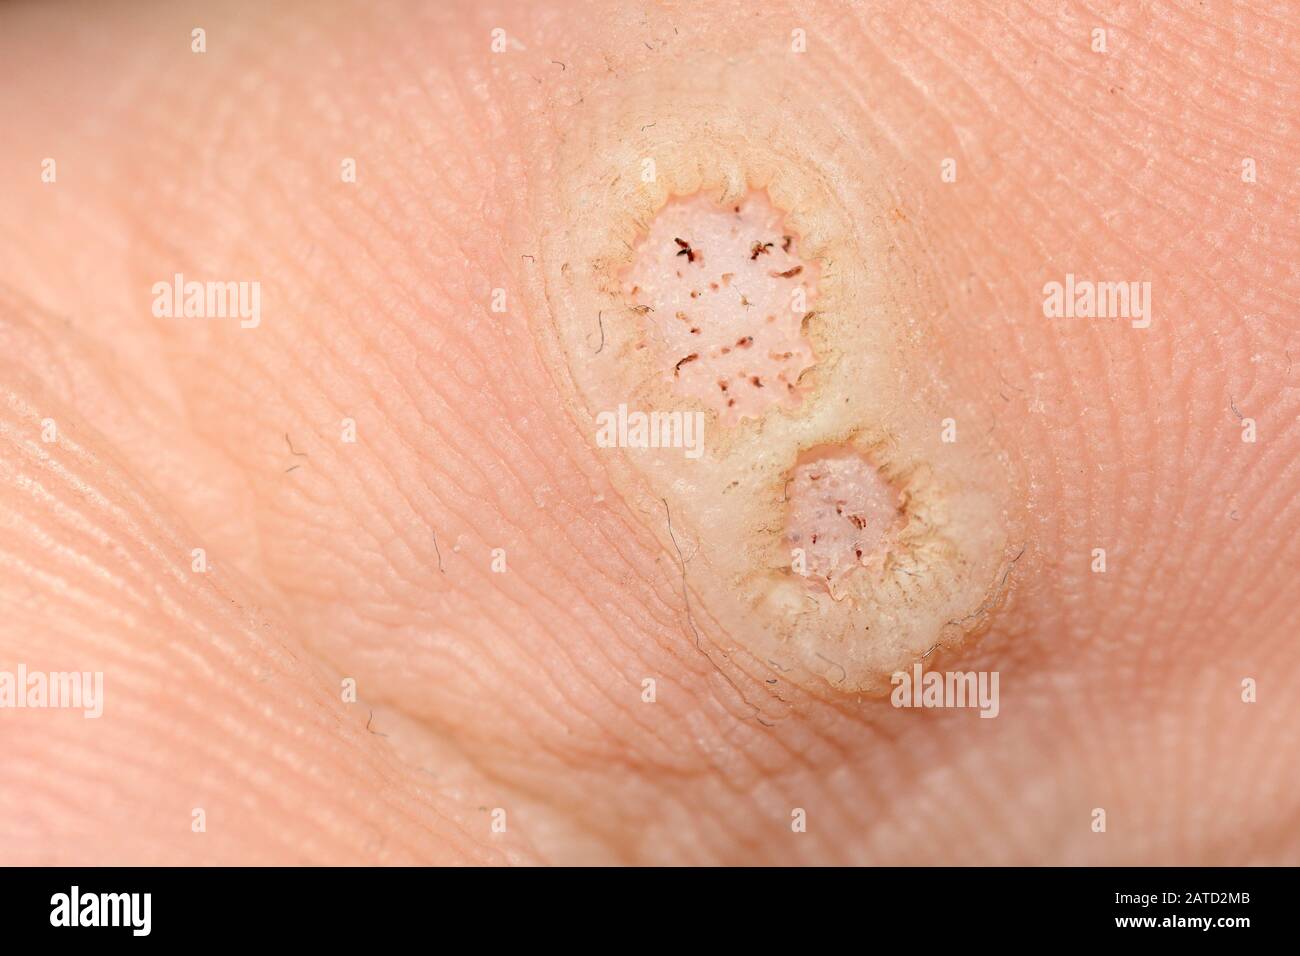 Plantare Warzen, die durch das humane Papillomavirus oder HPV verursacht werden, auf einem infizierten Fuß Stockfoto